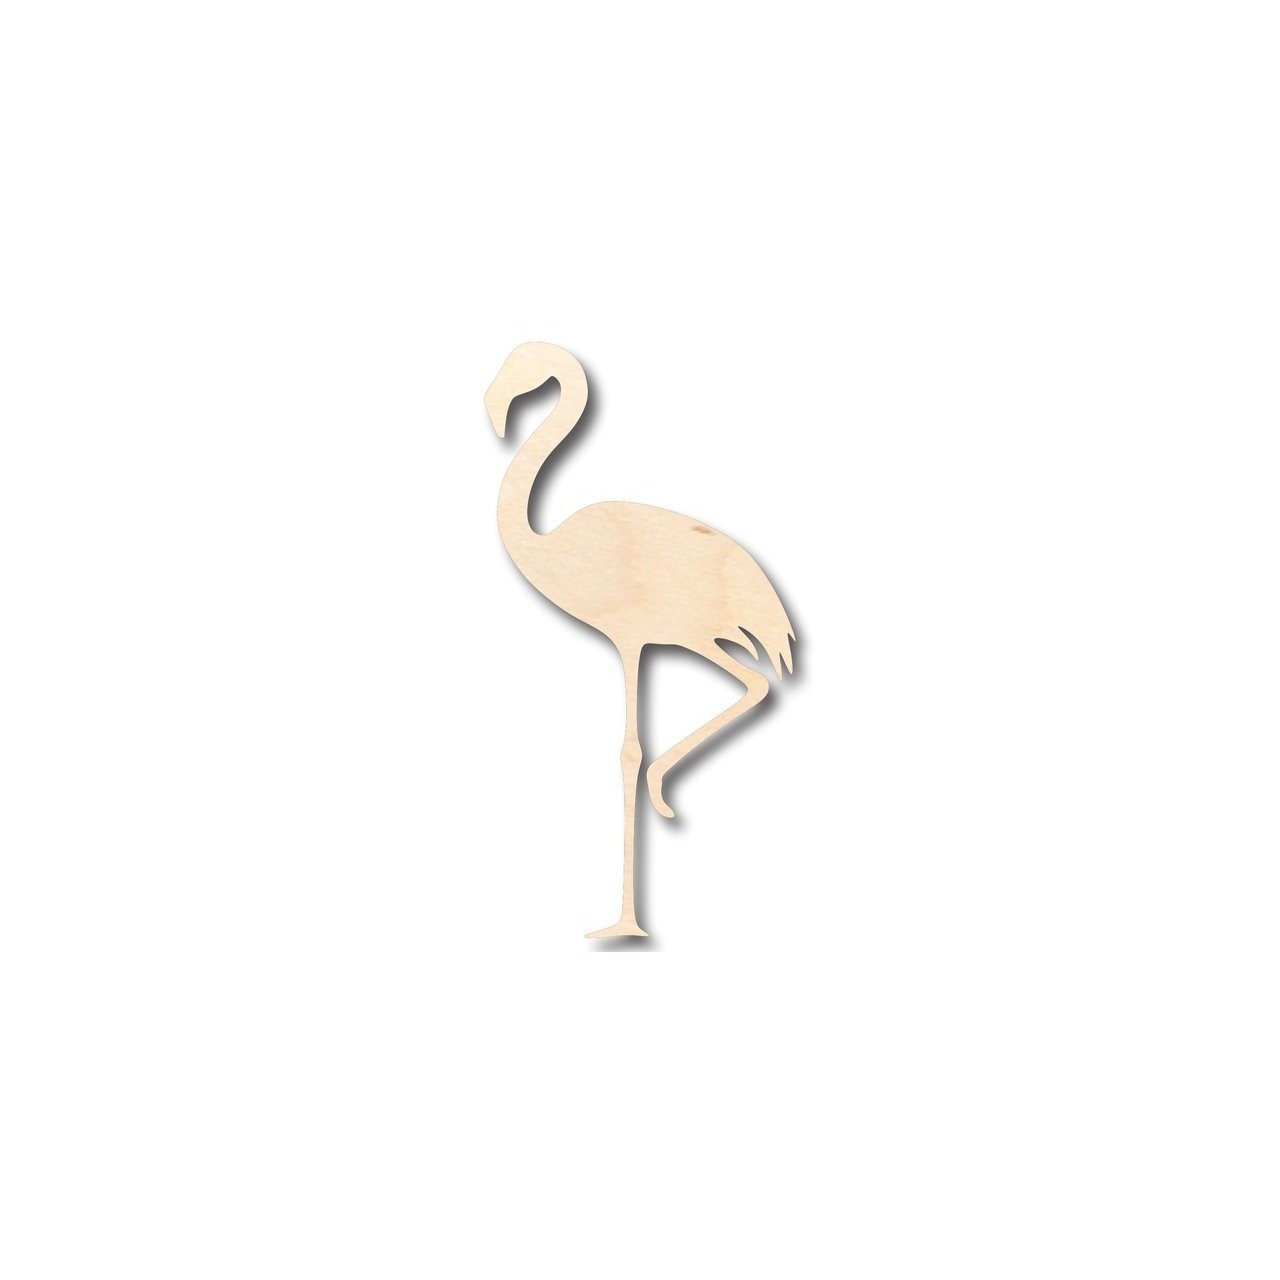 Unfinished Wooden Flamingo Shape - Animal - Bird - Wildlife - Craft - up to 24